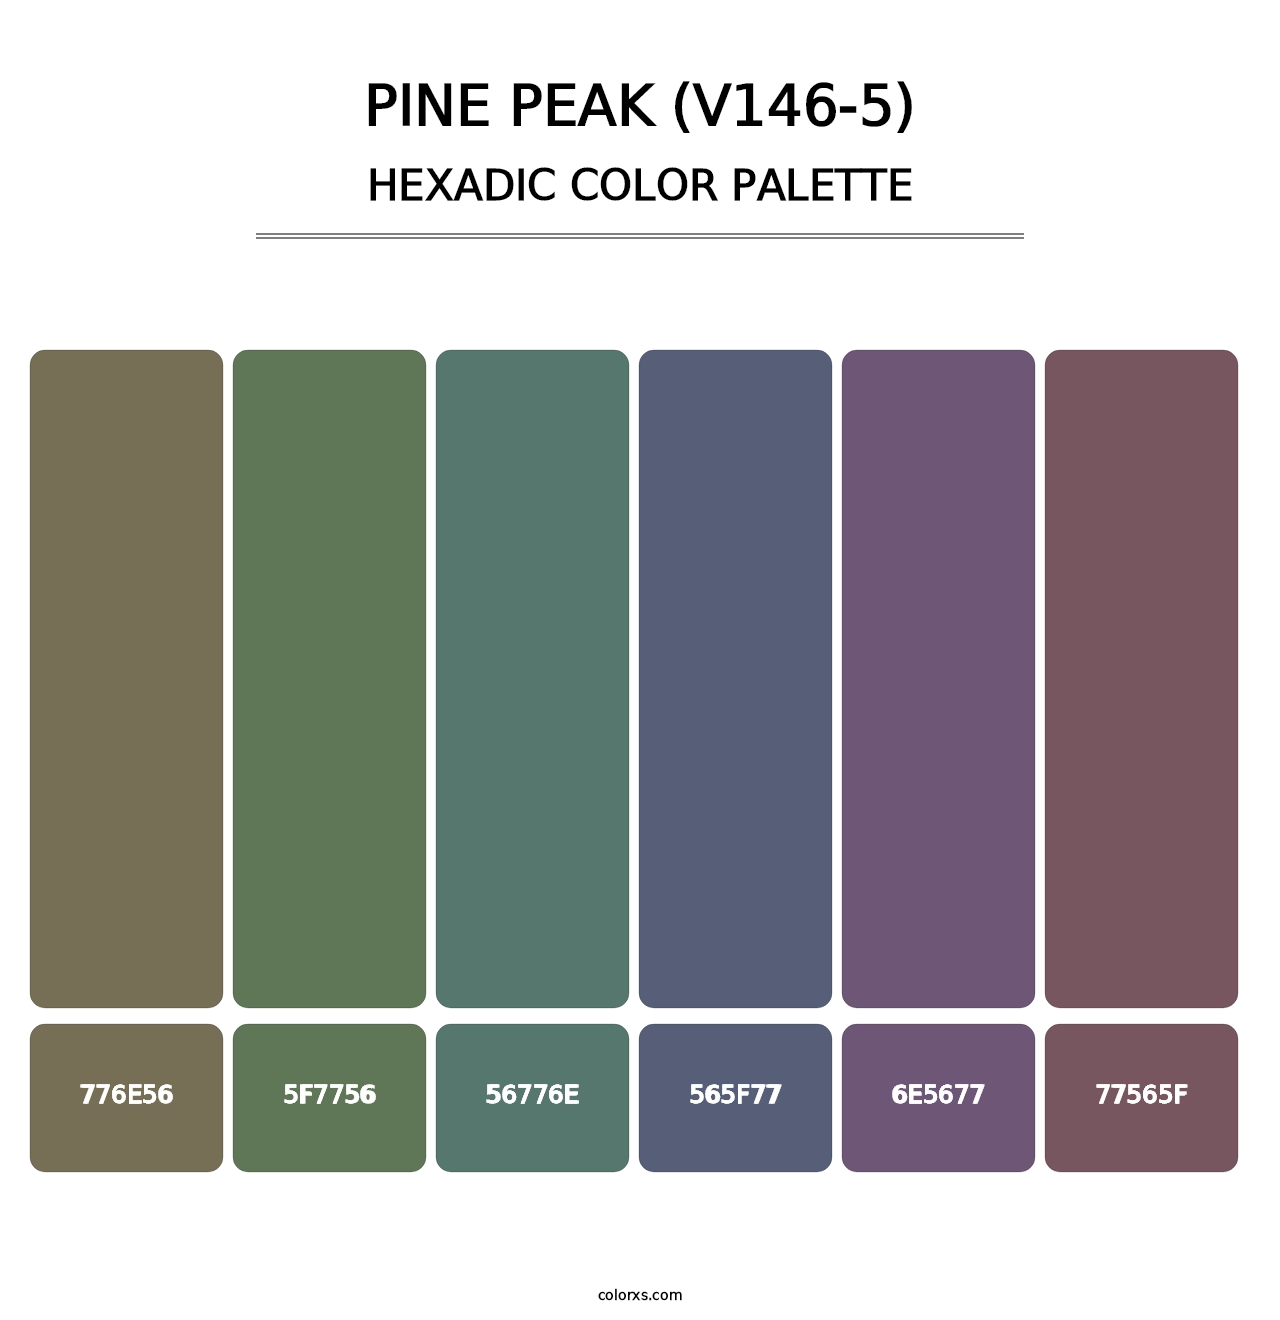 Pine Peak (V146-5) - Hexadic Color Palette